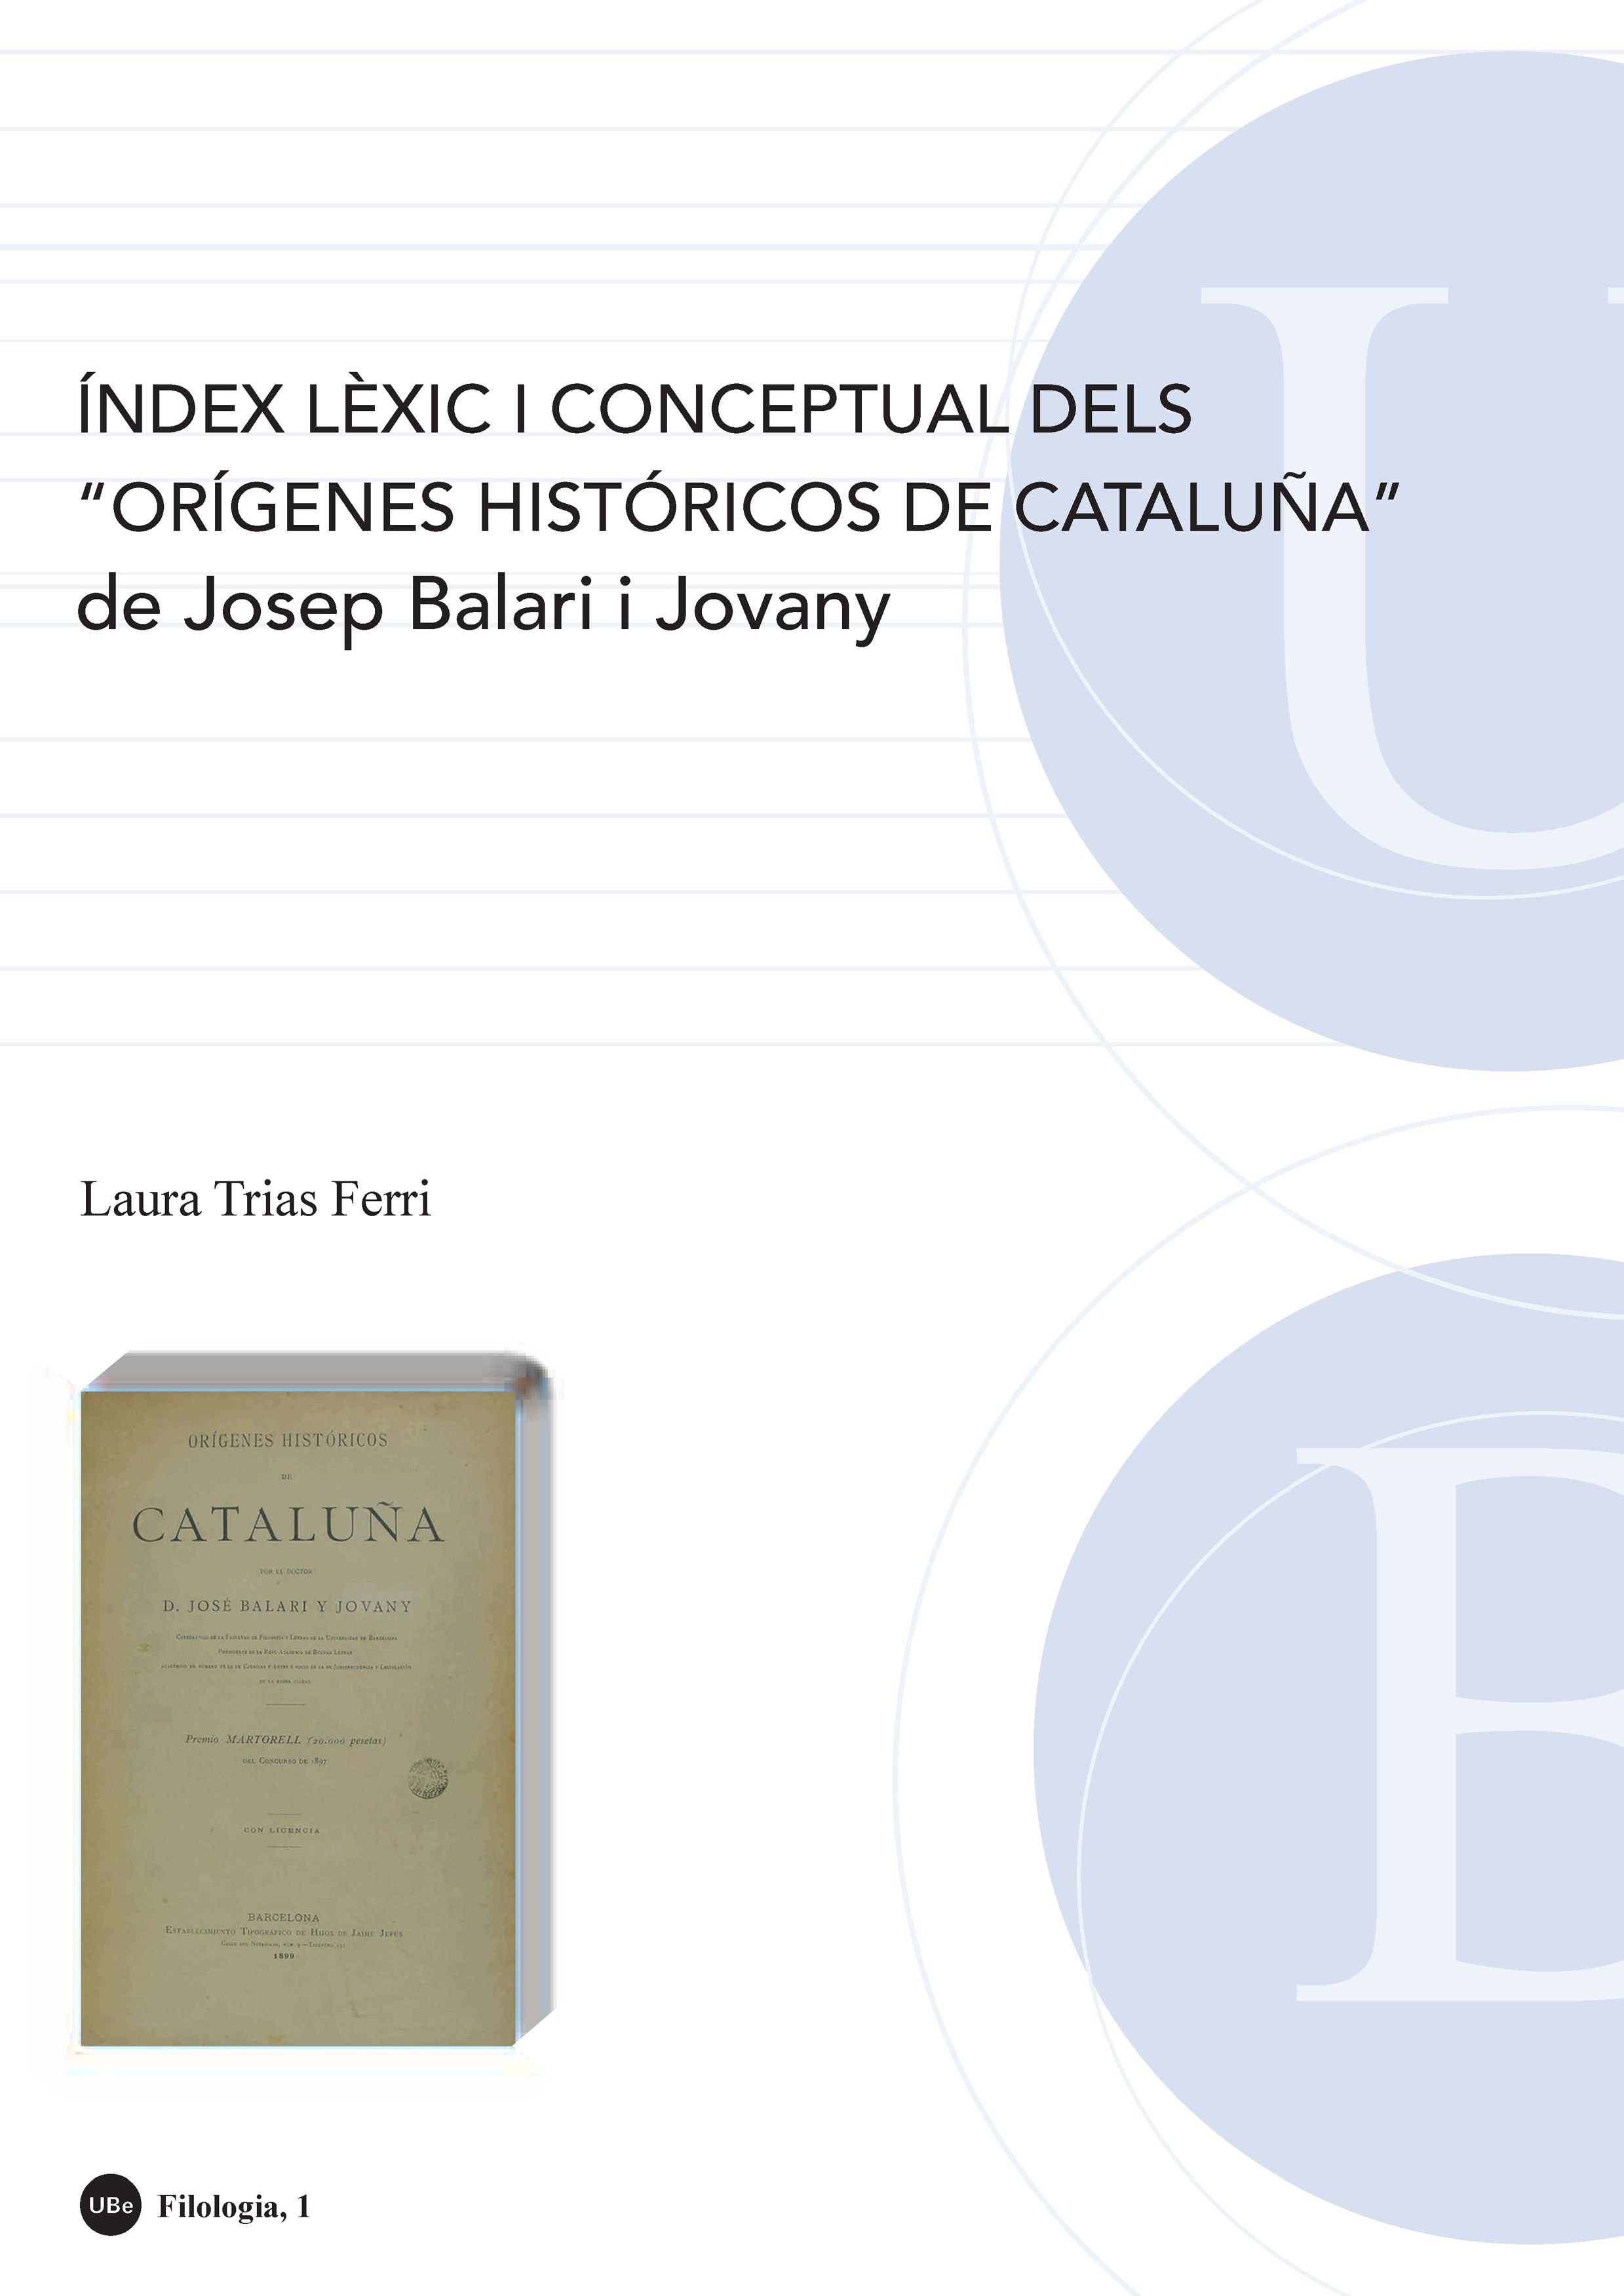 Índex lèxic i conceptual dels "Orígenes históricos de Cataluña" de Josep Balari i Jovany